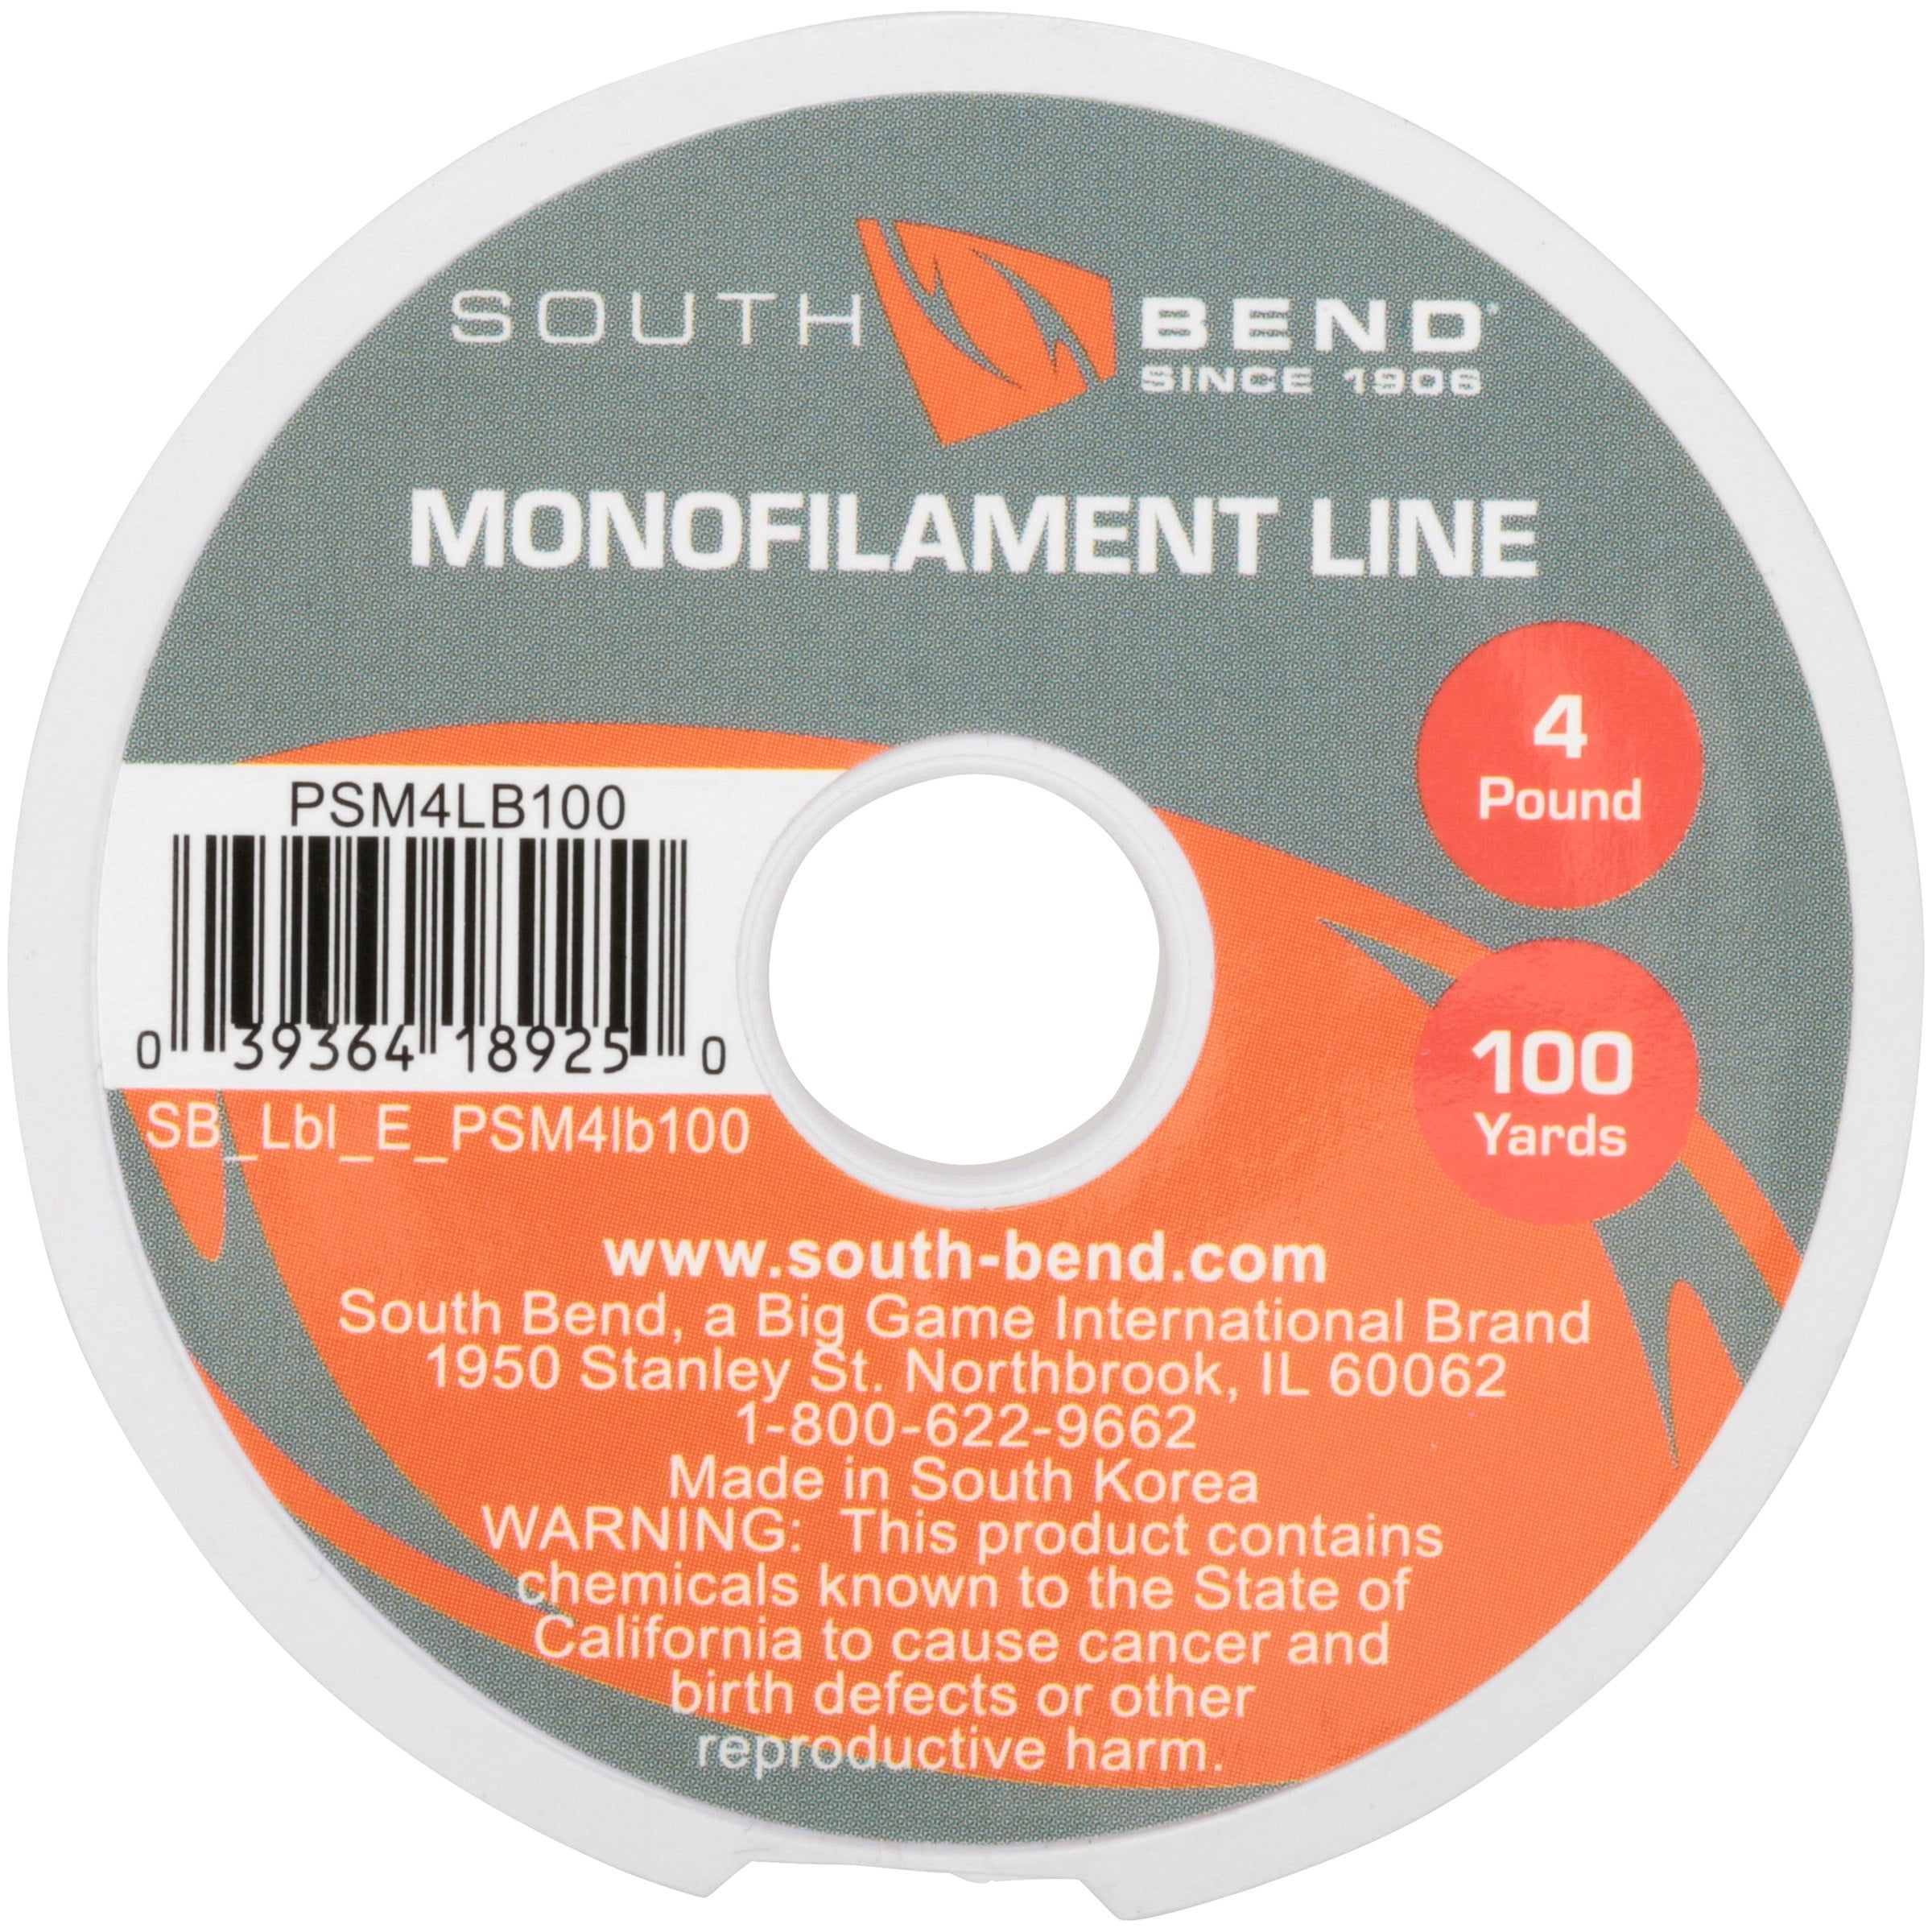 South Bend PSM4LB100 Pony Spool Mono Fishing Line, 4 lb, 100 yd 